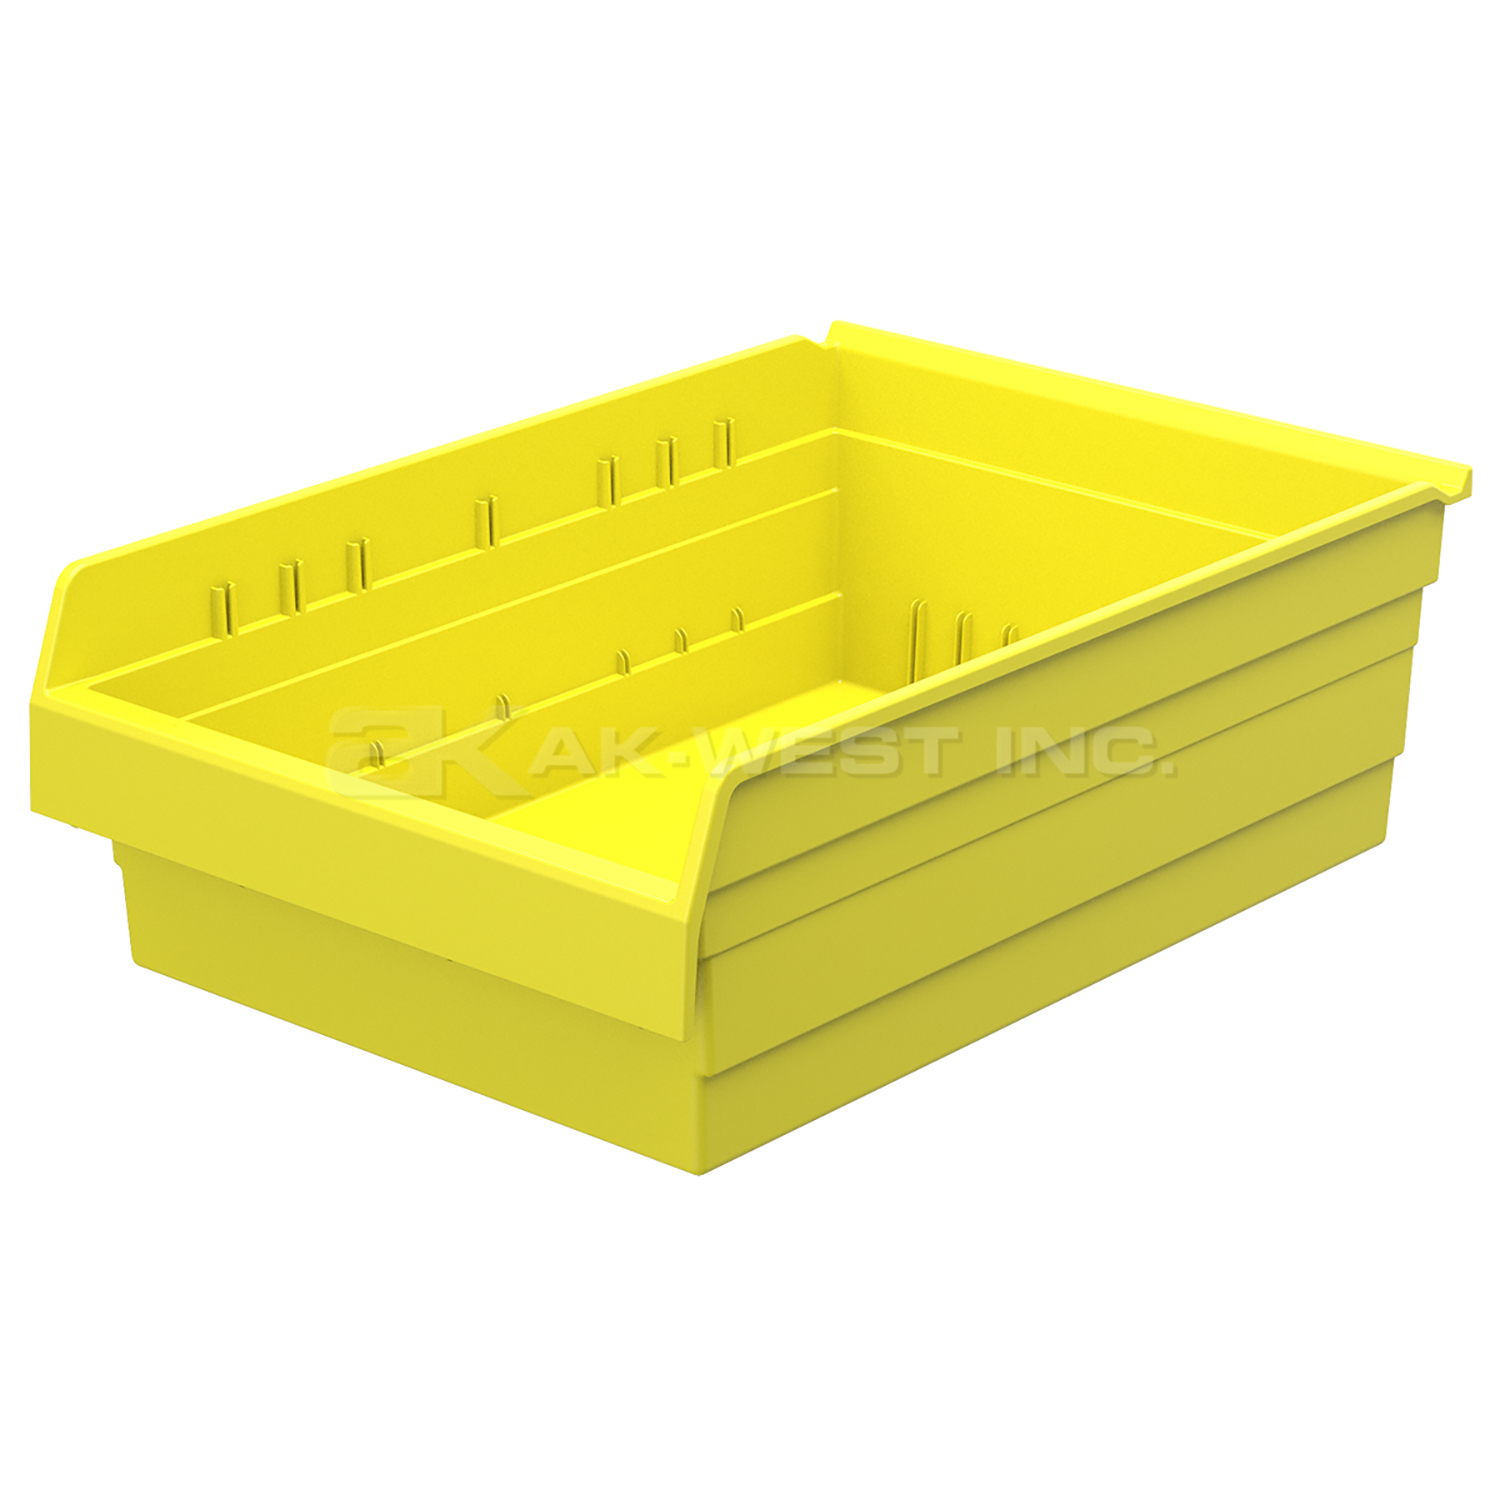 Yellow, 23-5/8" x 16-1/2" x 8" Shelf Bin (4 Per Carton)